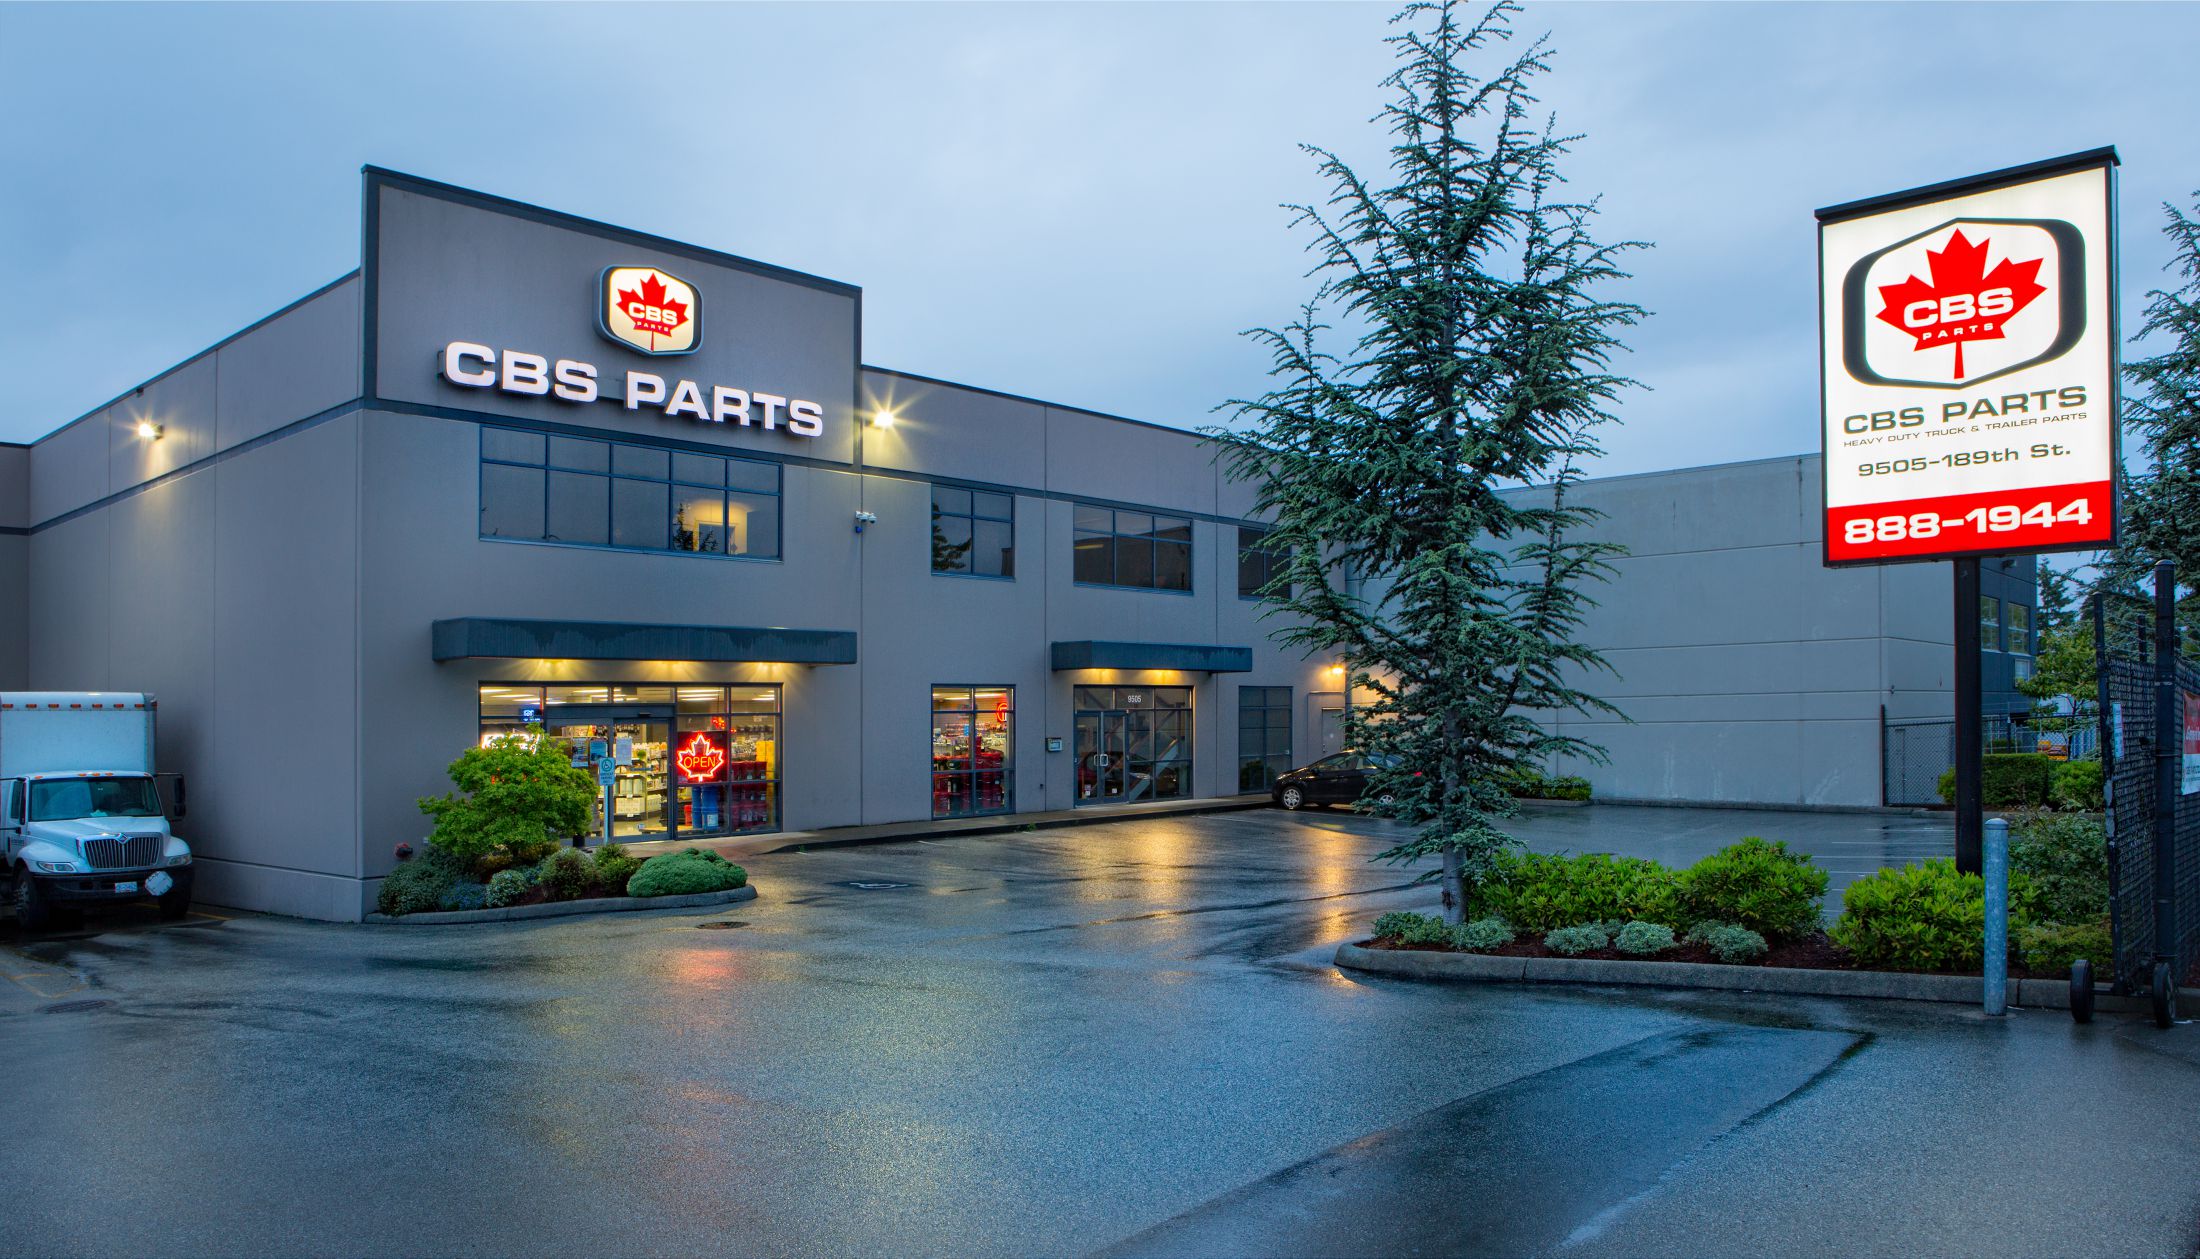 CBS Parts office